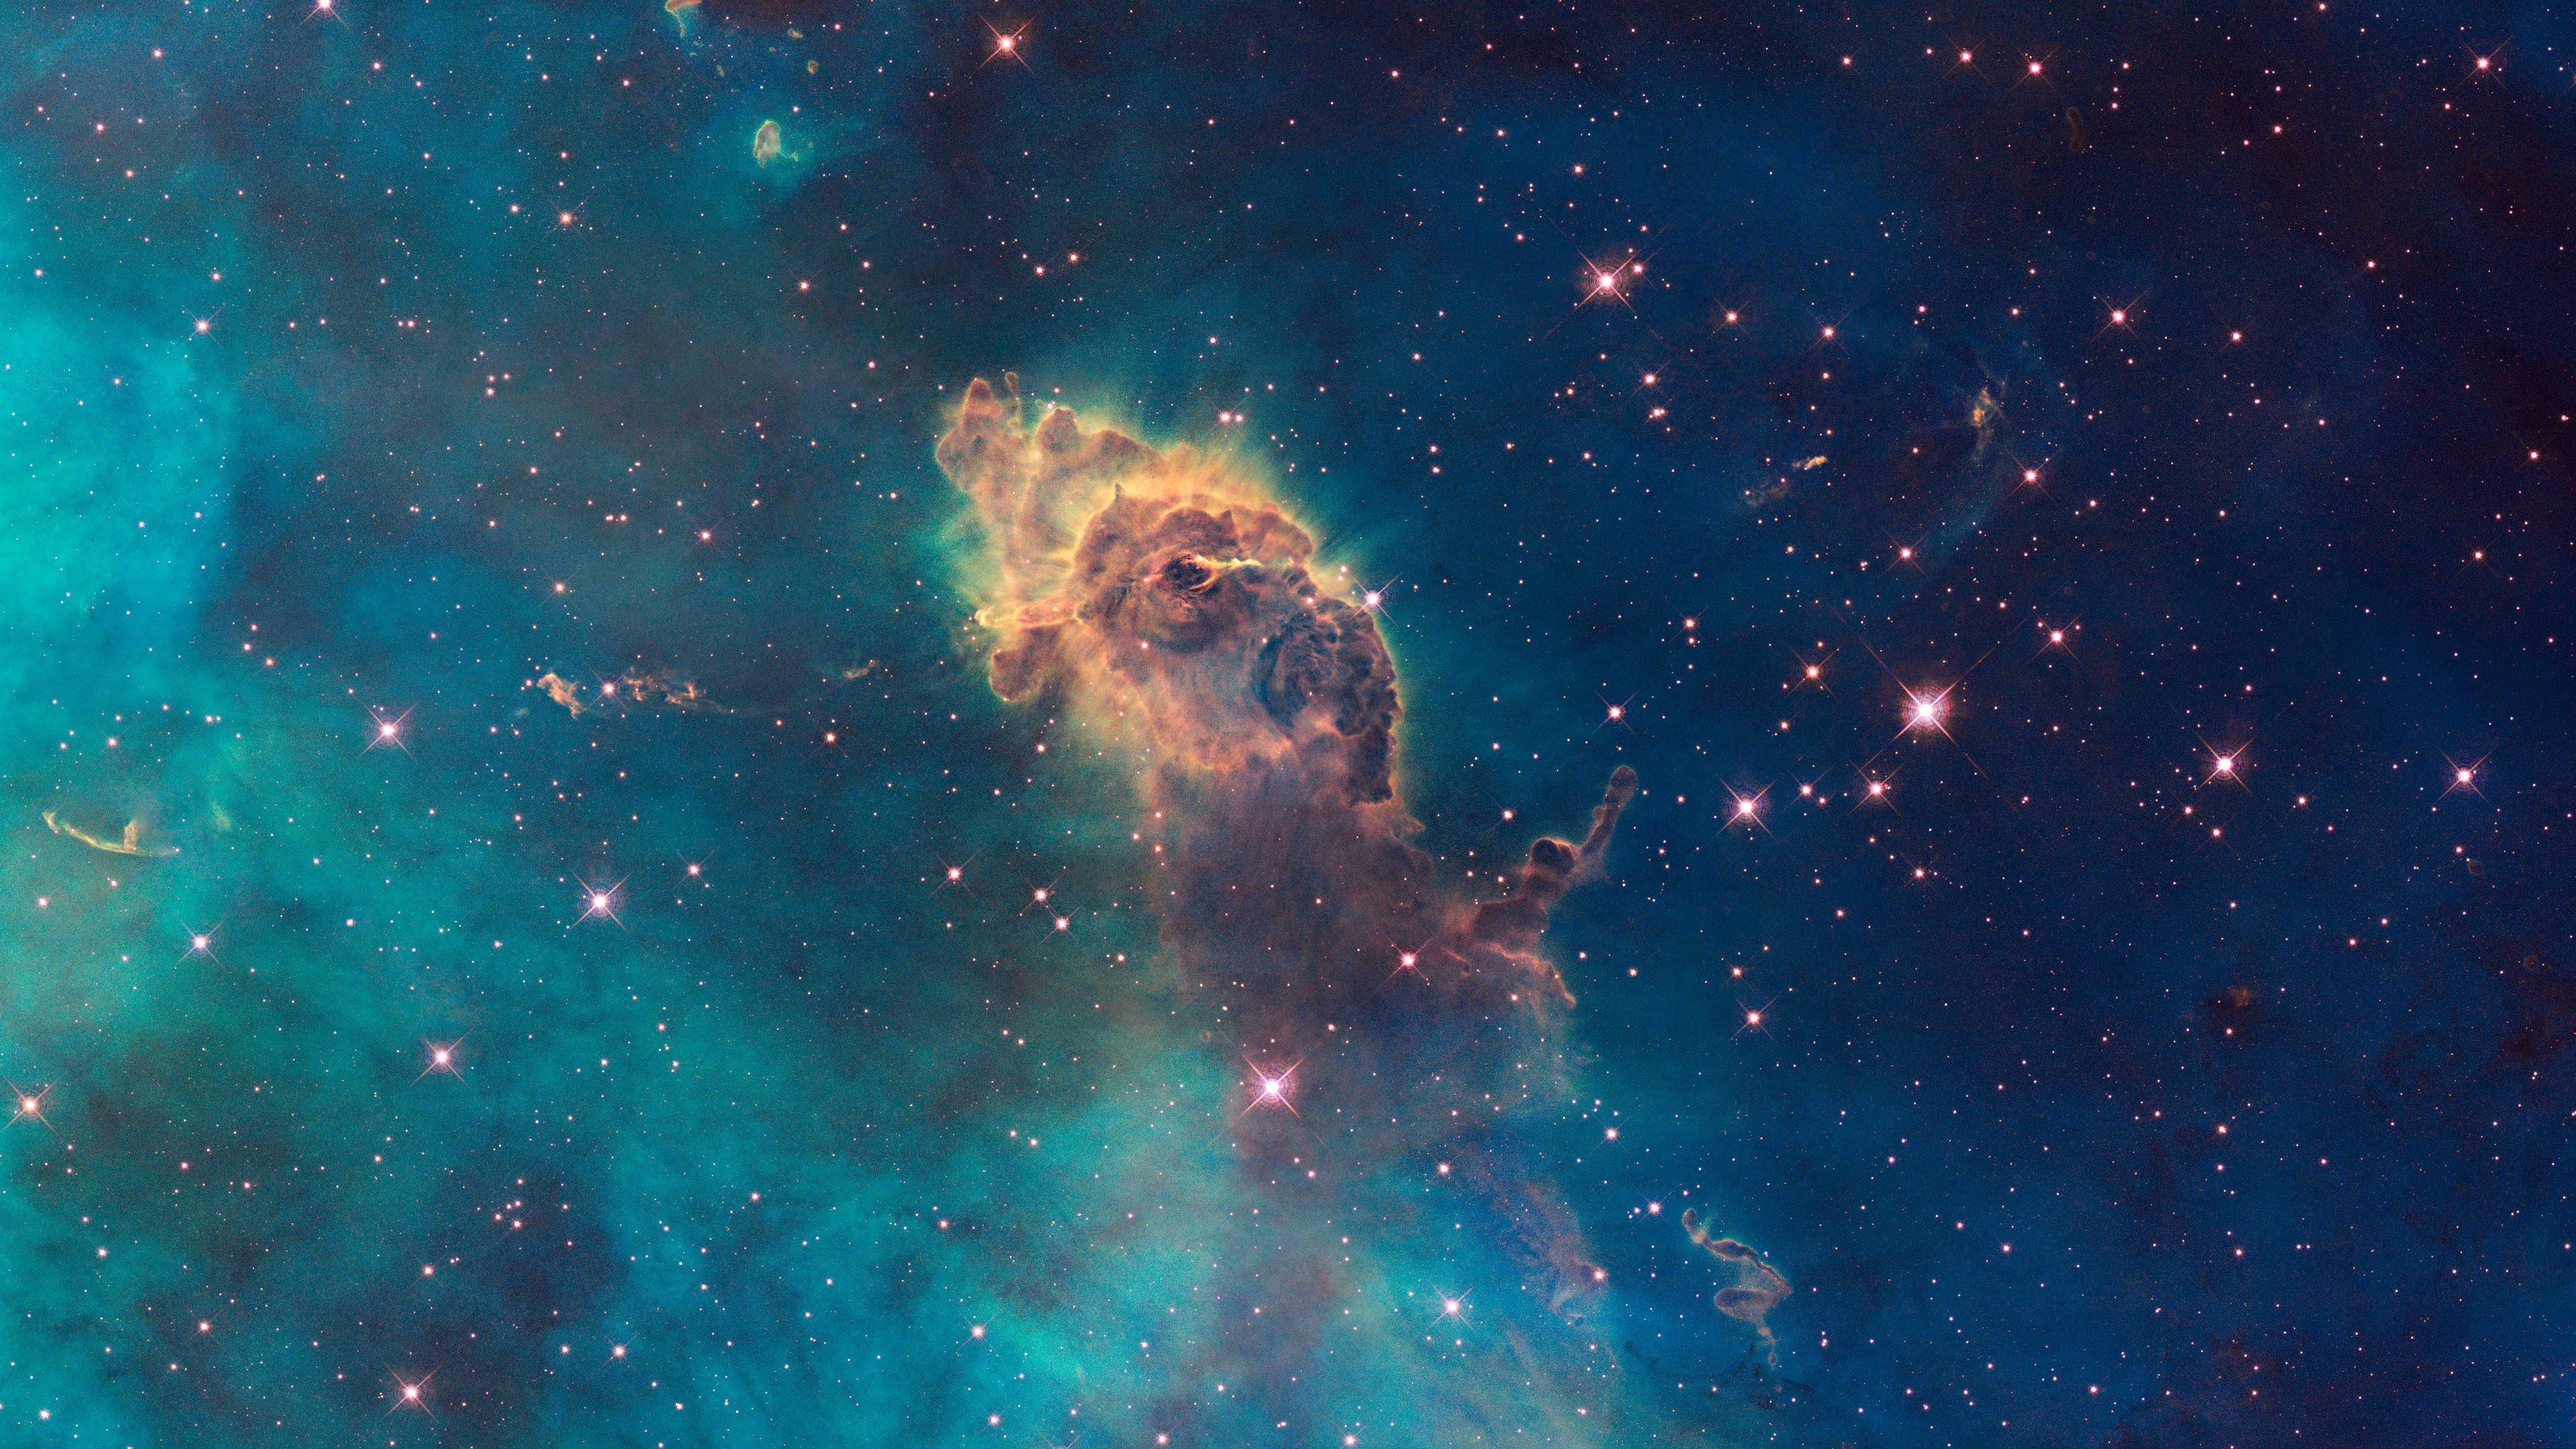 NASA Nebula Wallpapers - Top Free NASA